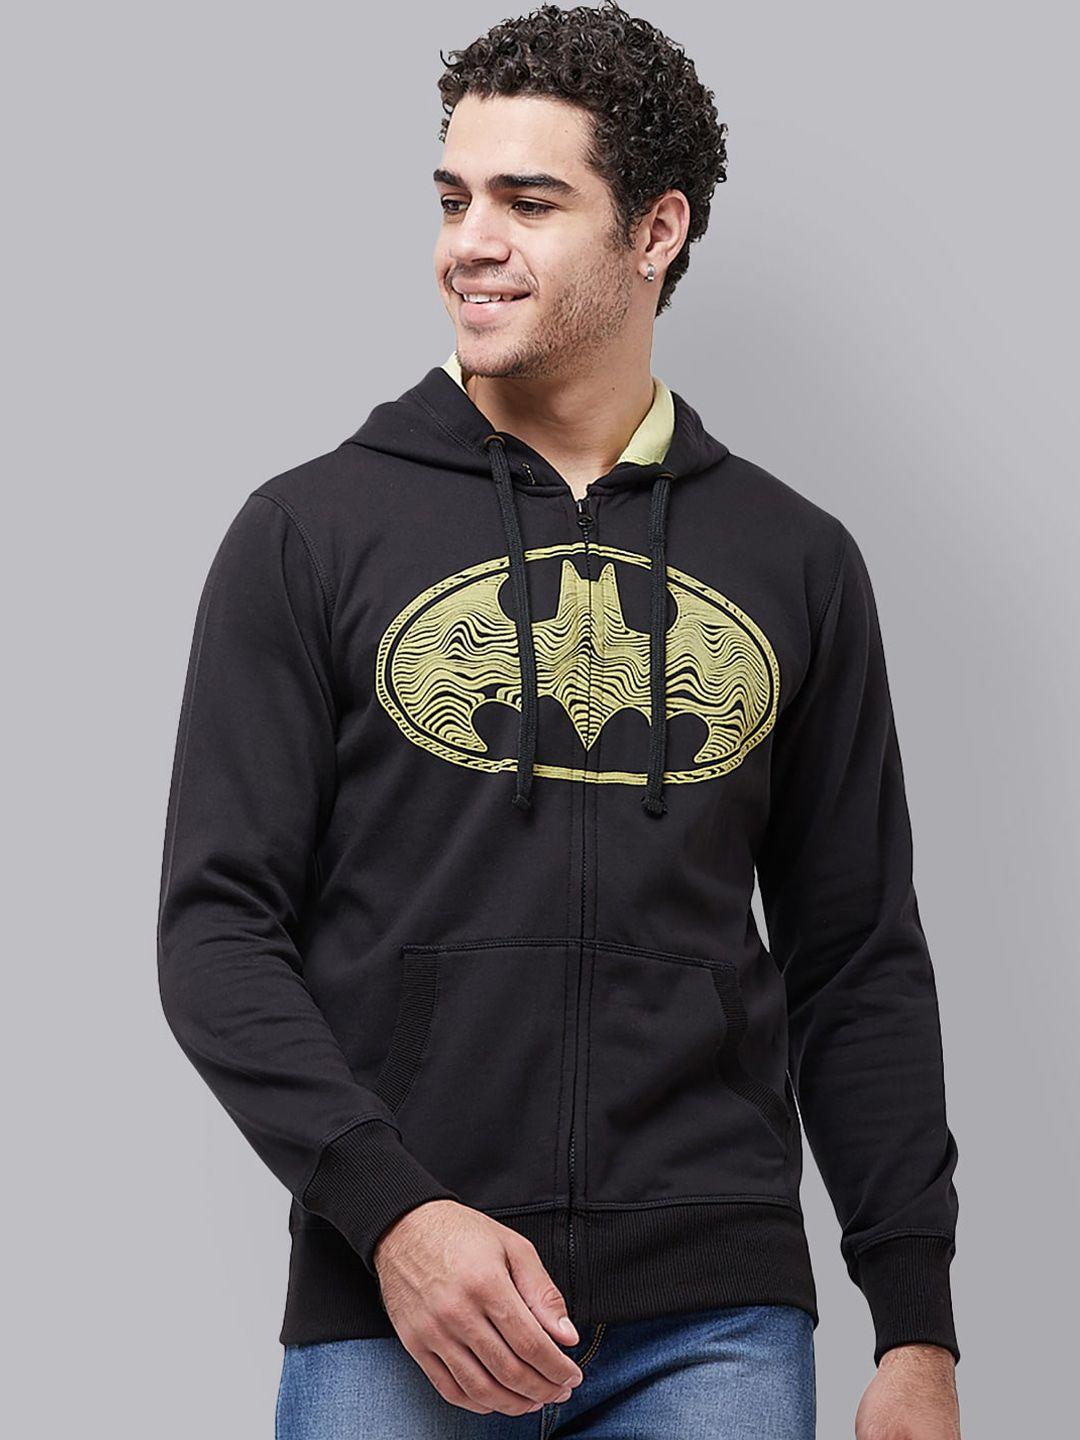 Free Authority Men Black Batman Printed Hooded Sweatshirt